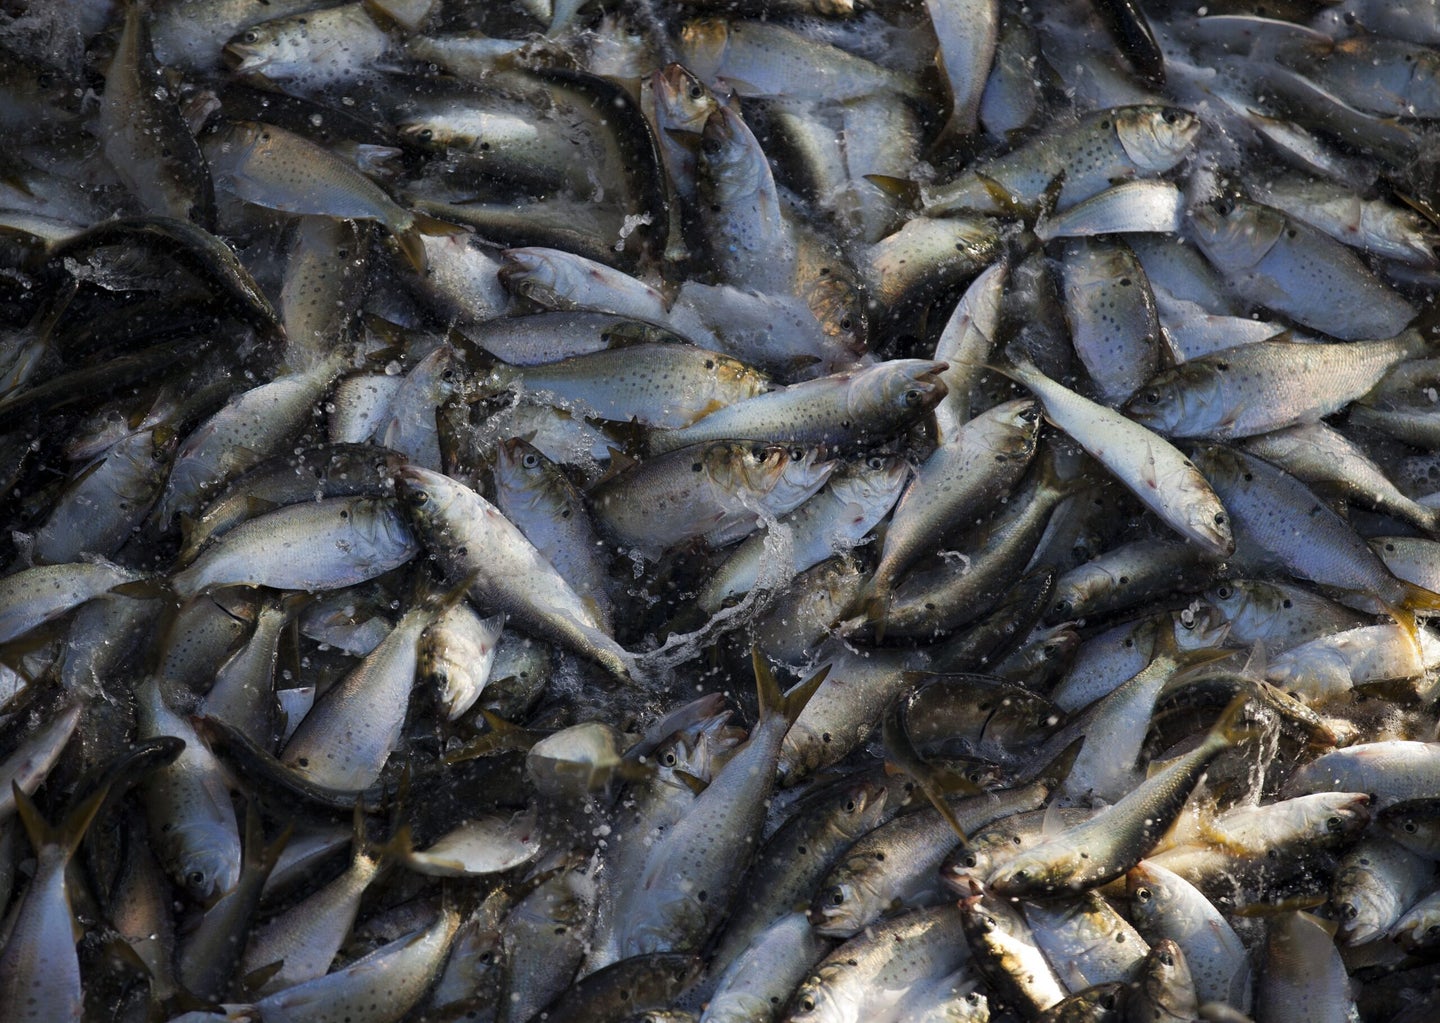 A school of Menhaden fish thrash in a net